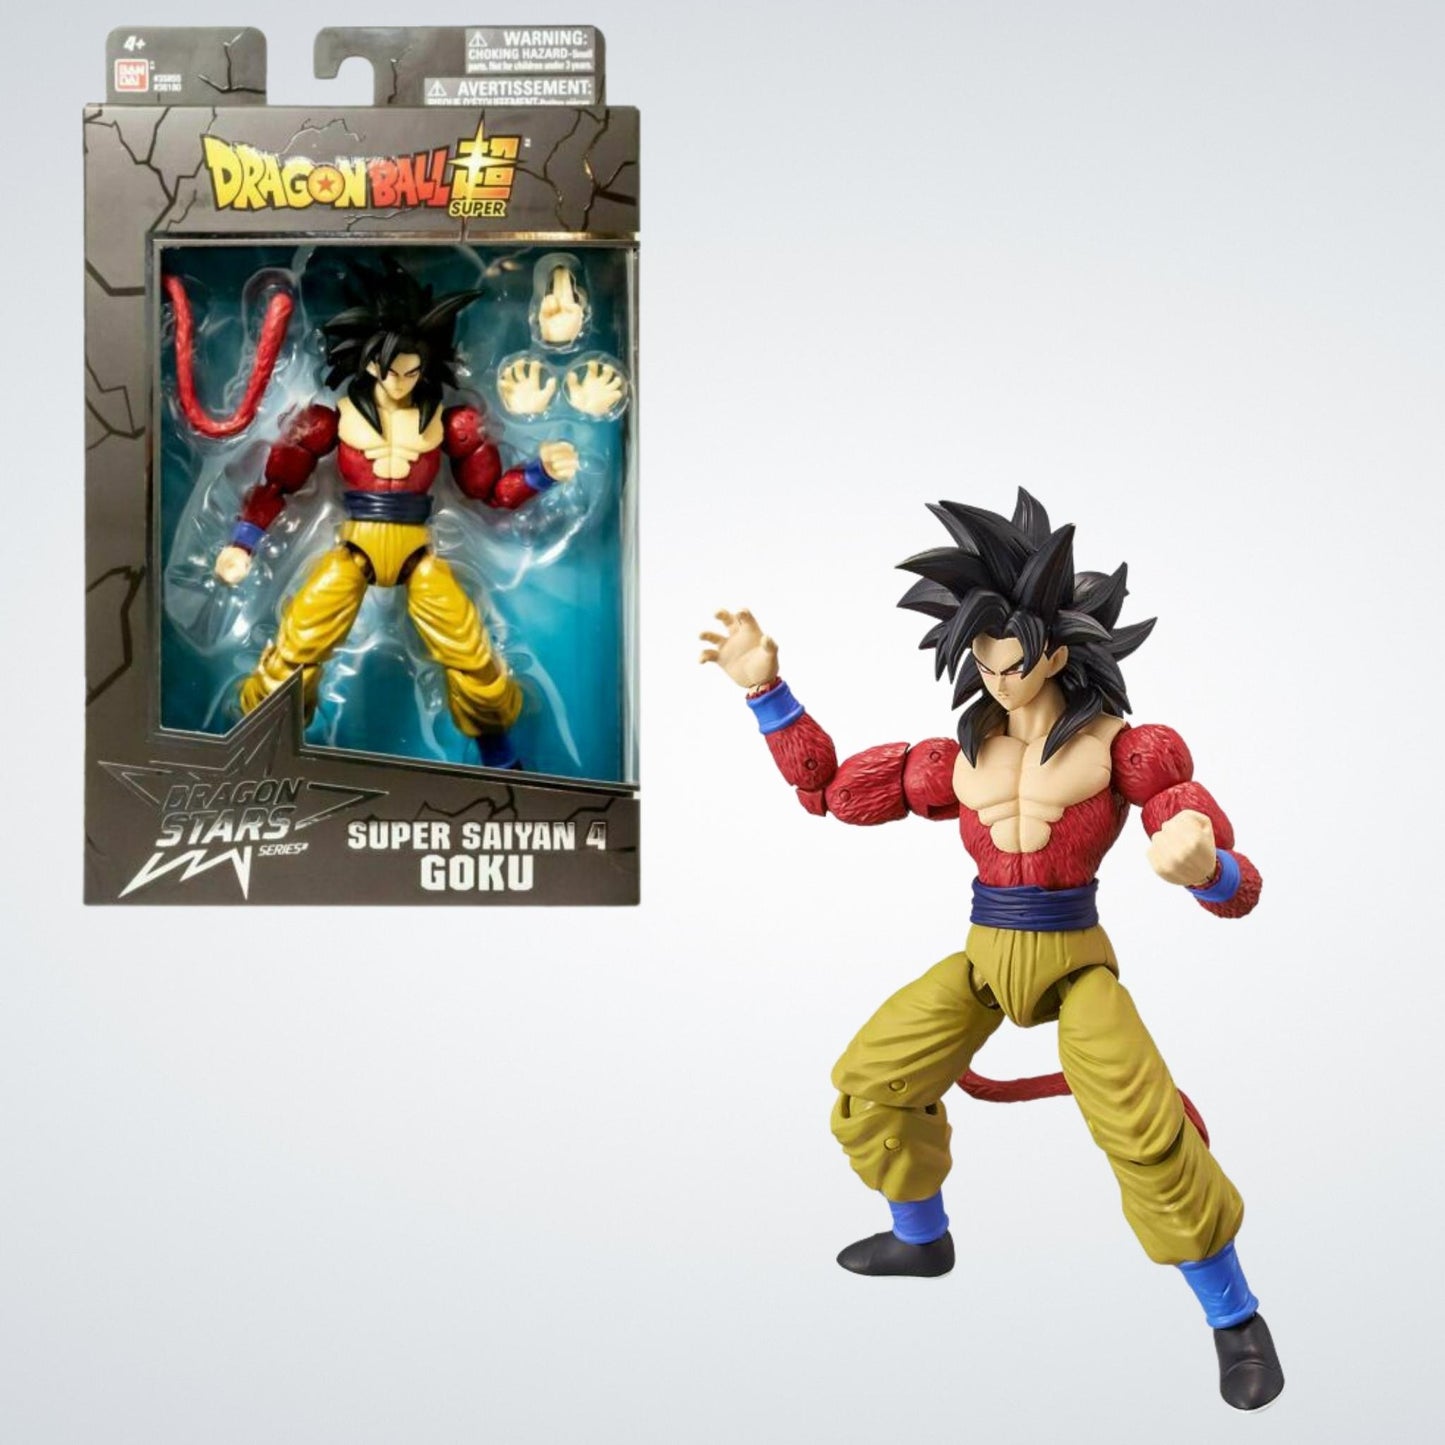 Action Figure Goku Super Sayajin: Dragon Ball Super (Dragon Stars